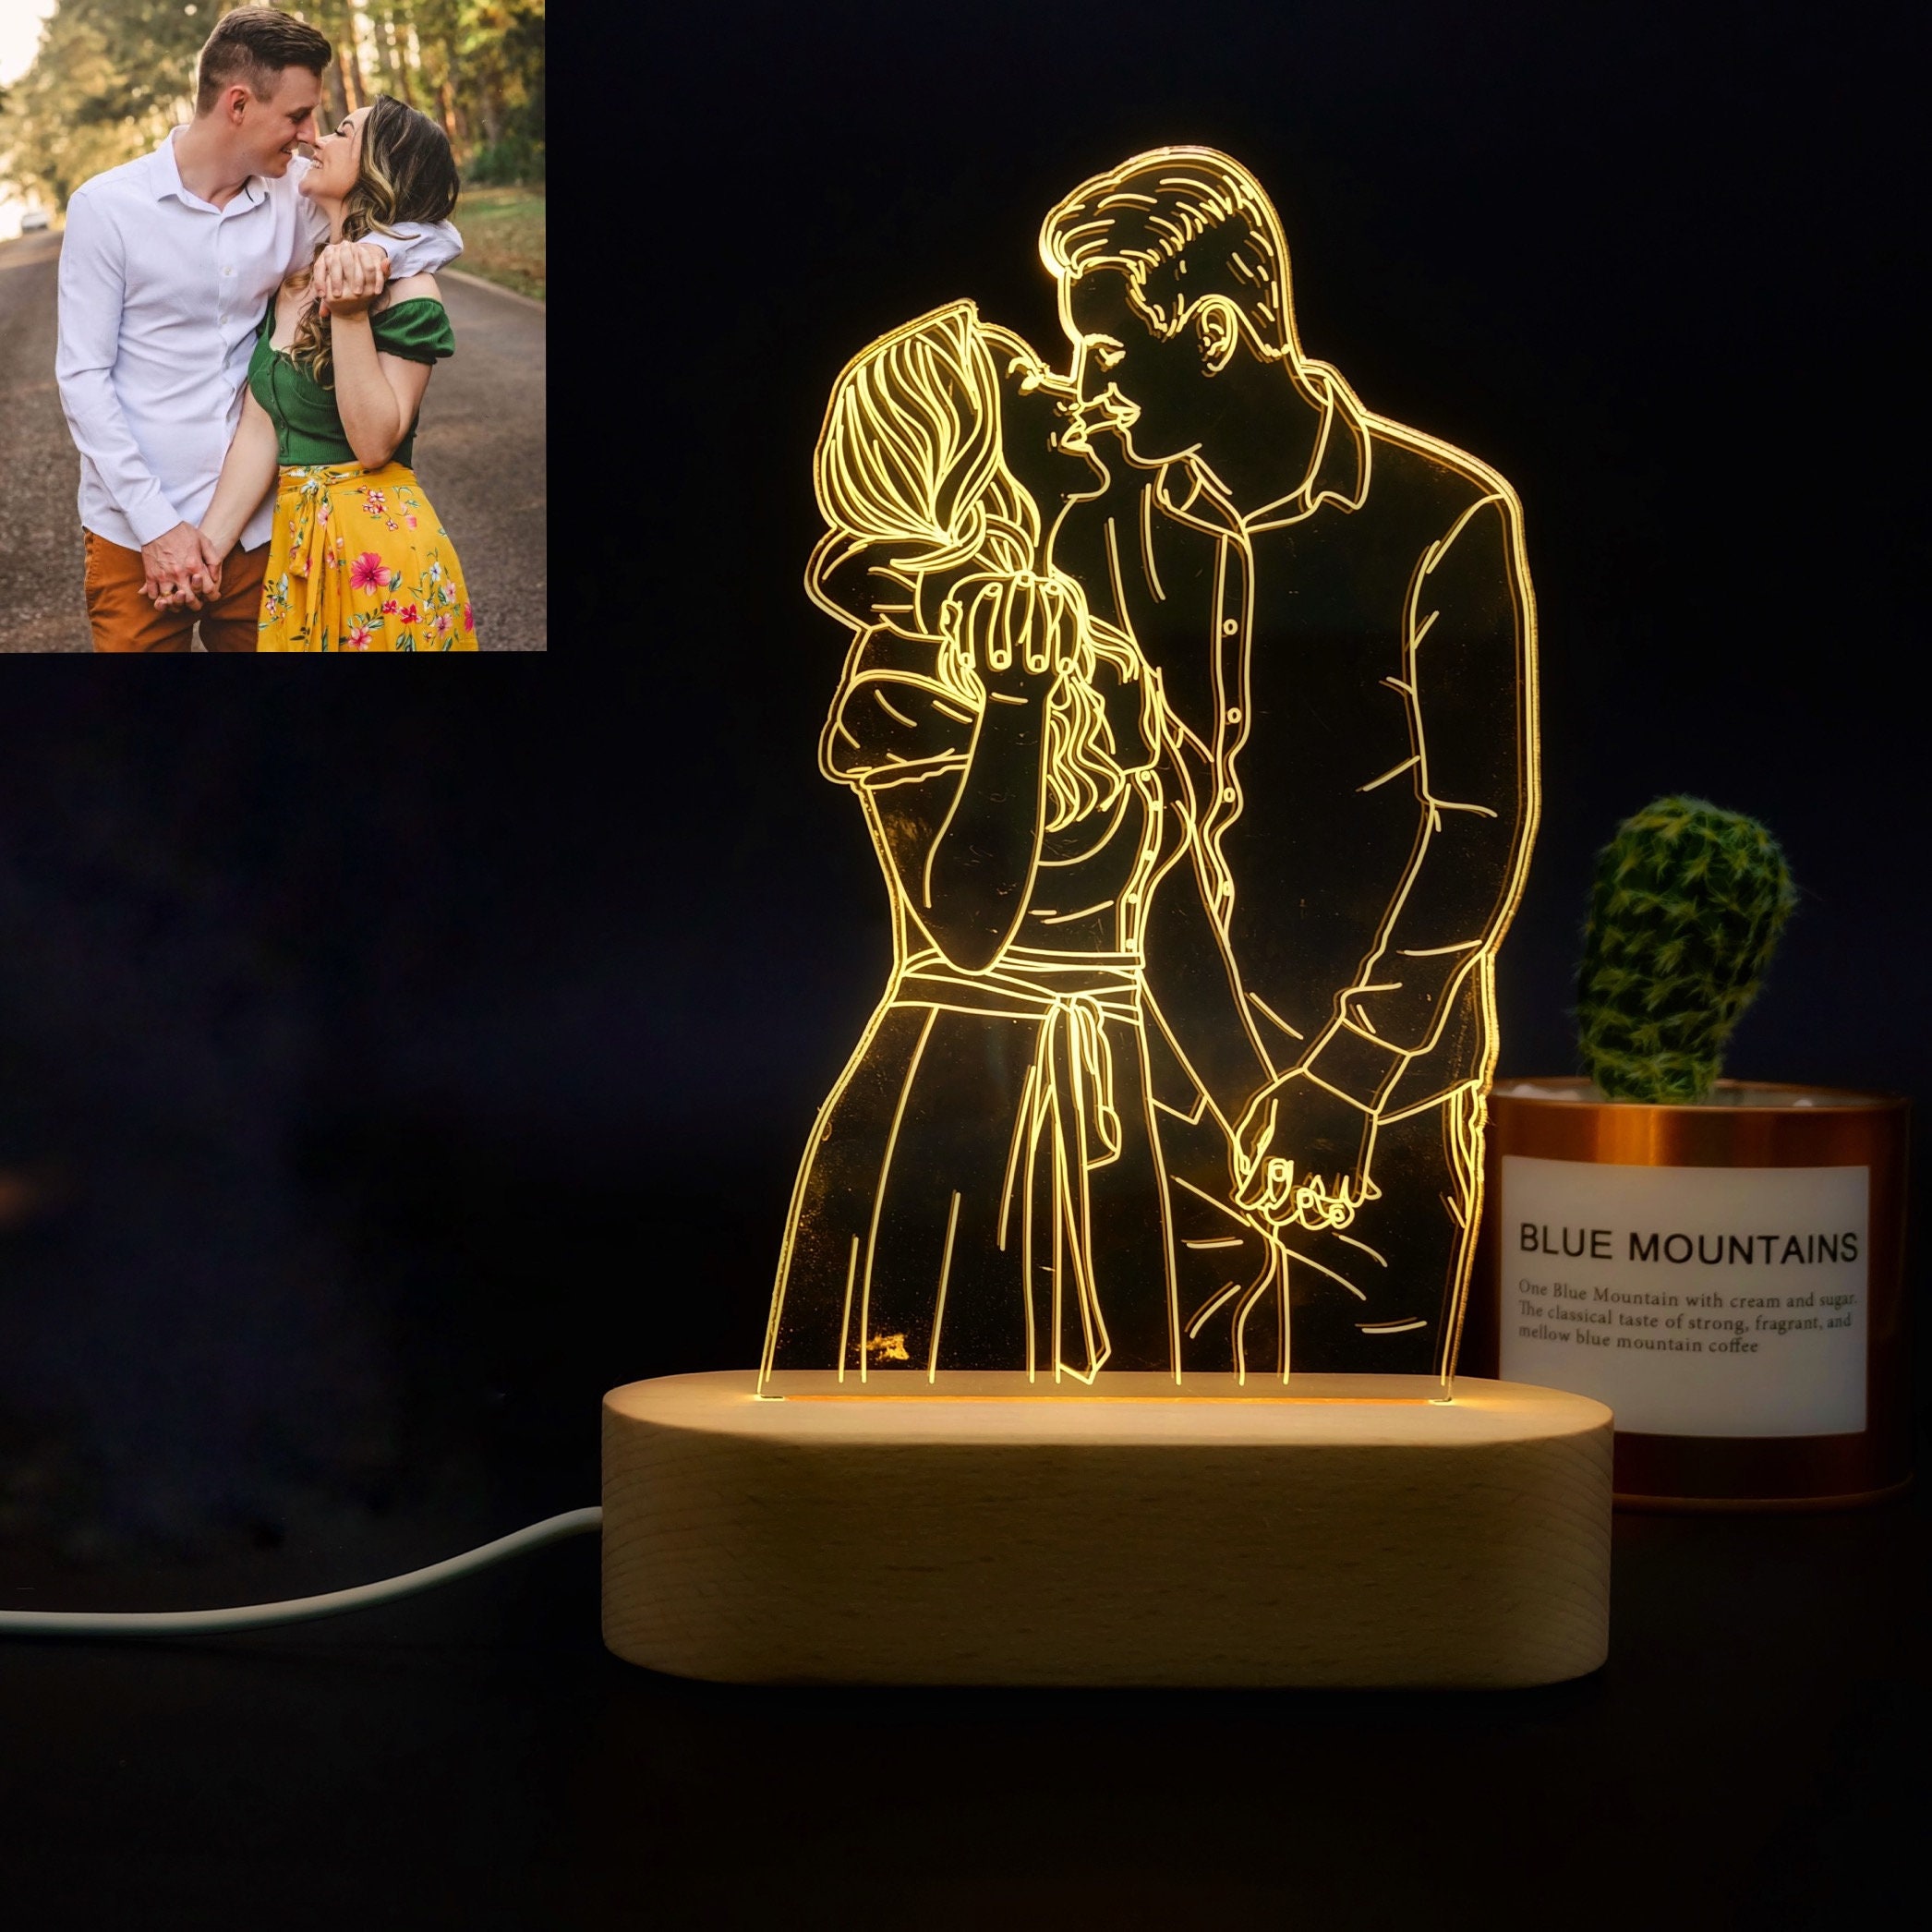 ✨ Personalização de Lâmpada de Foto 3D Gravada ✨ A combinação perfeita de arte e tecnologia! Guarde memórias únicas! 🎉